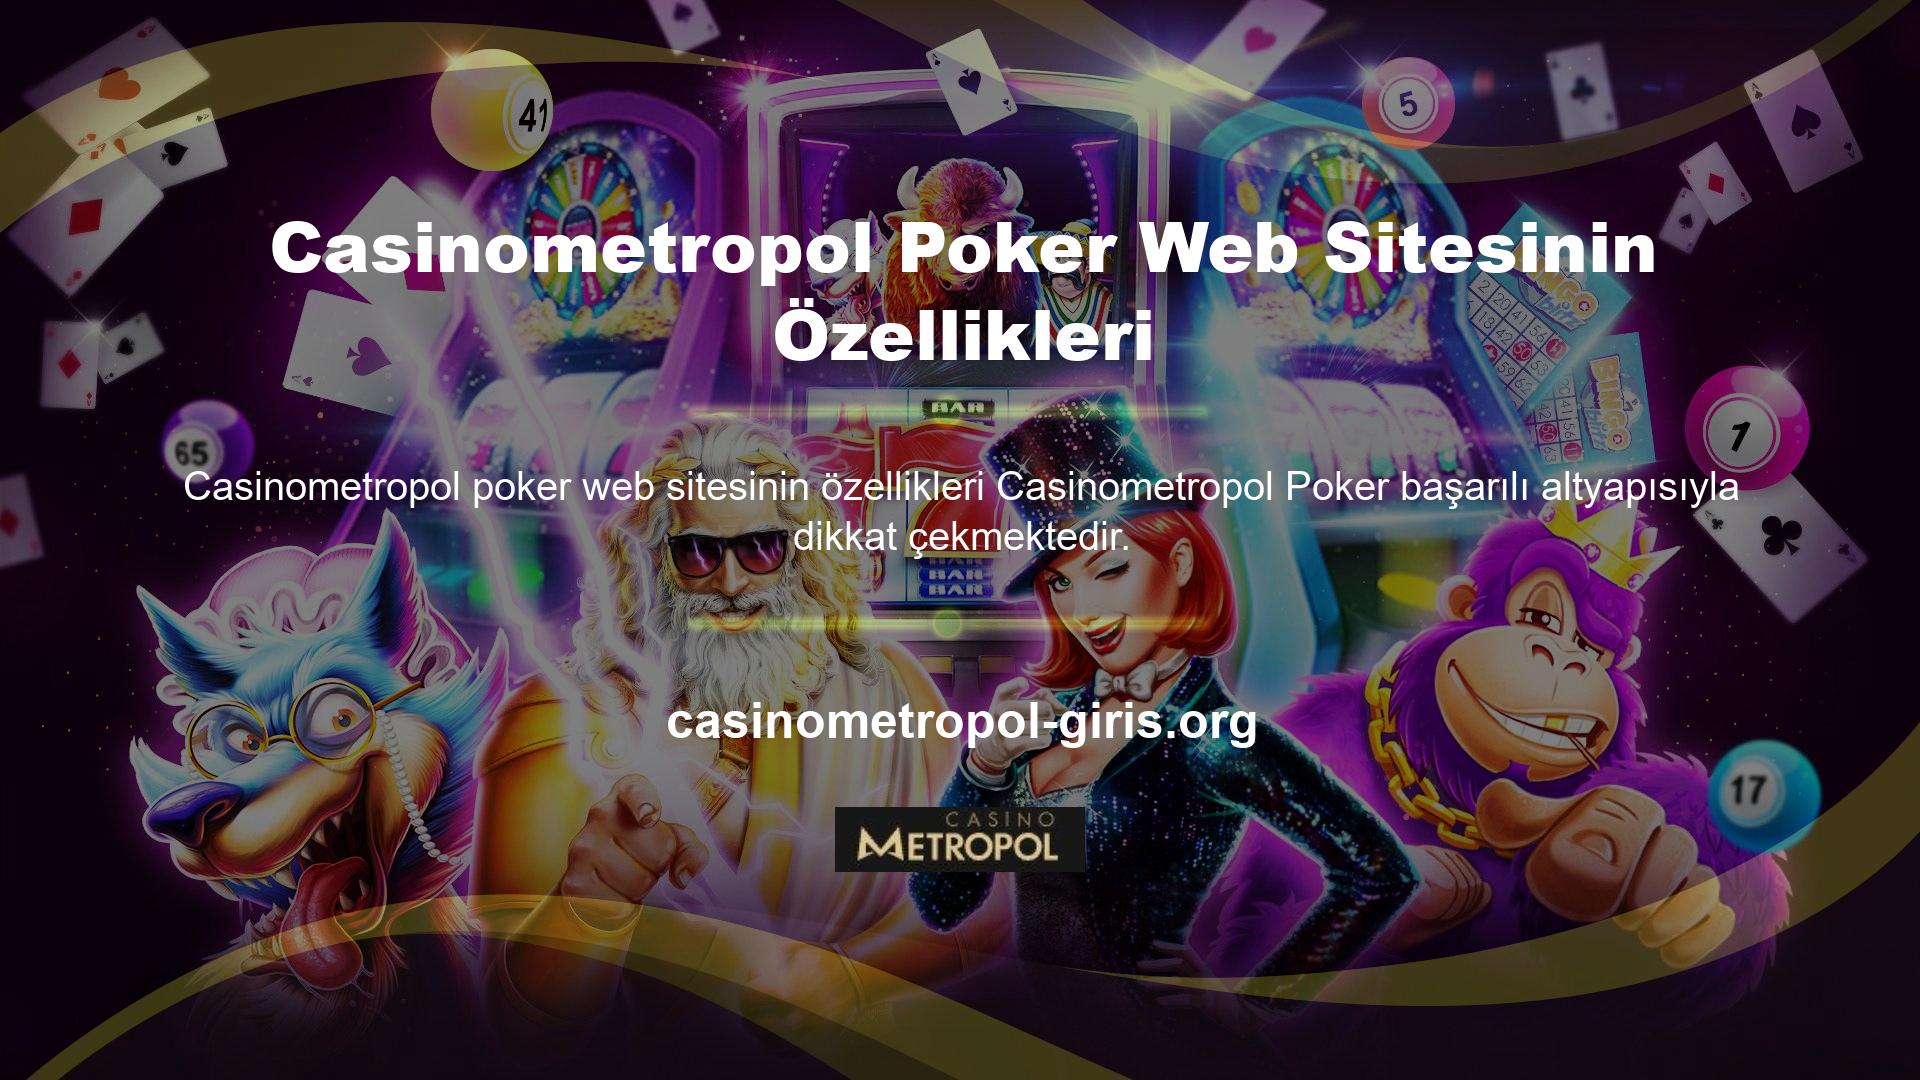 Bunun dışında Casinometropol poker sitesi pokerin çok güvenli olduğunu iddia ediyor